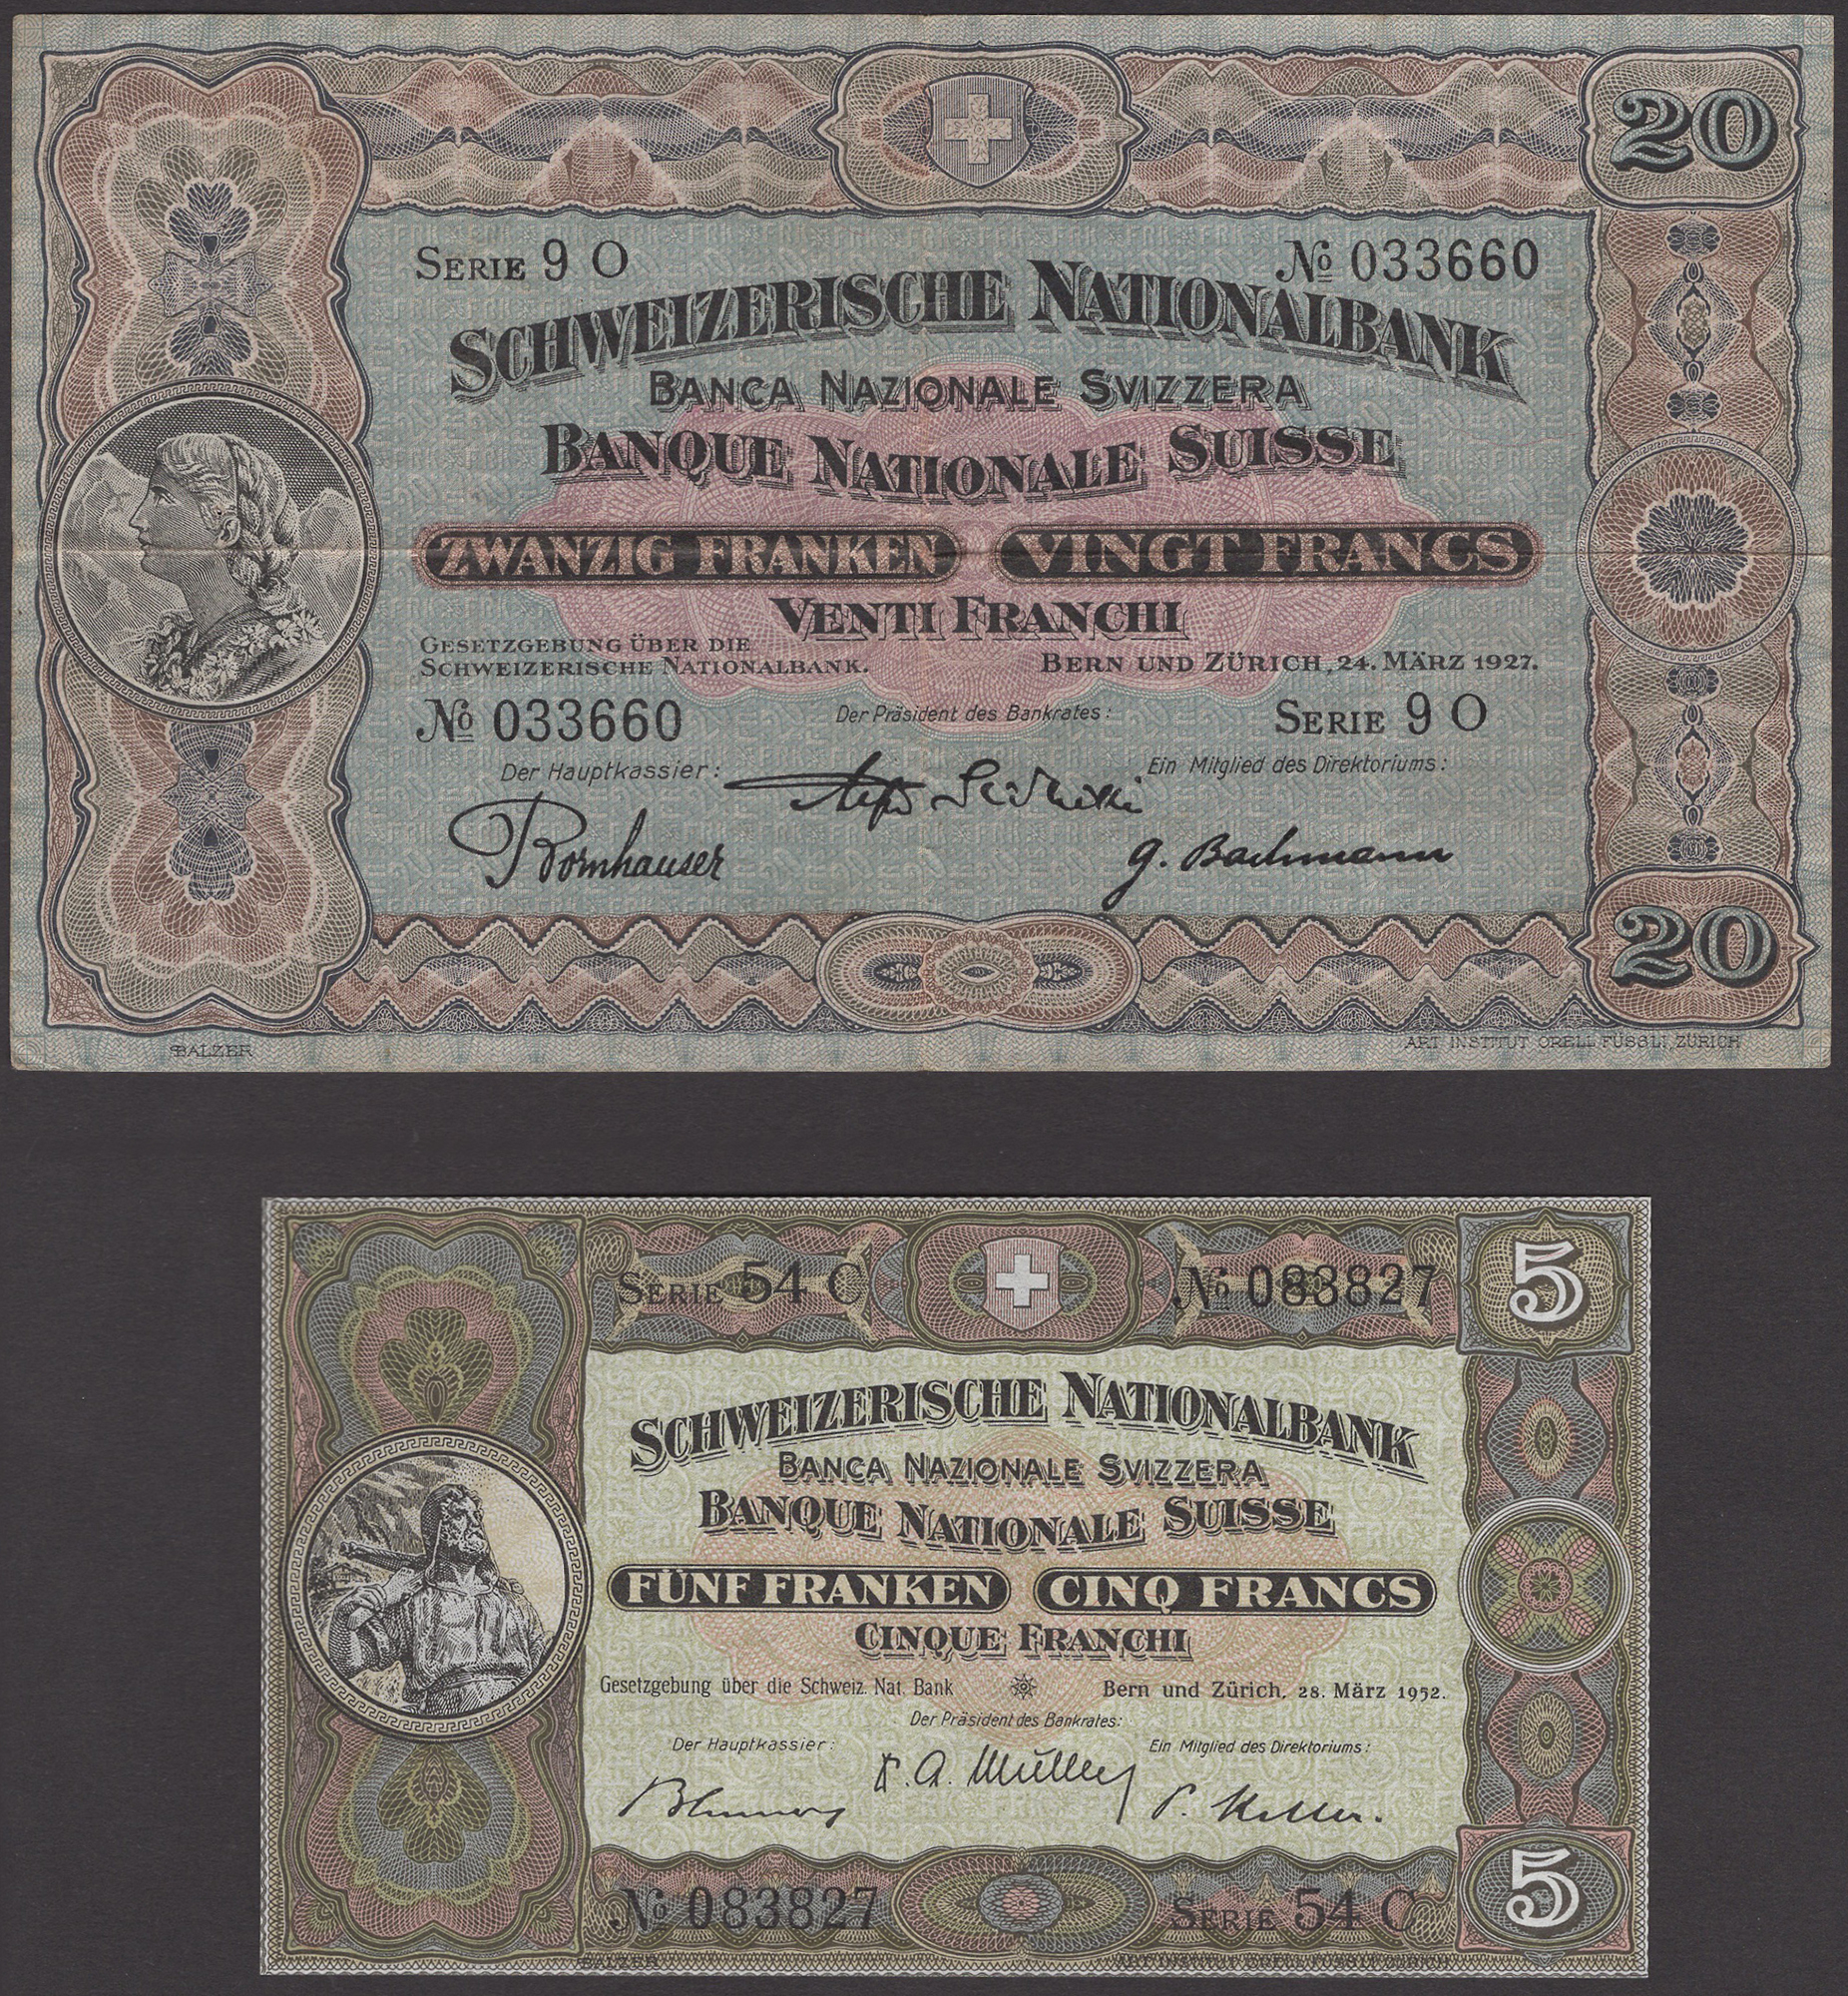 Schweizerische Nationalbank, 5 Francs, 28 March 1952, serial number 54C 088837, 20 Francs,... - Bild 3 aus 4